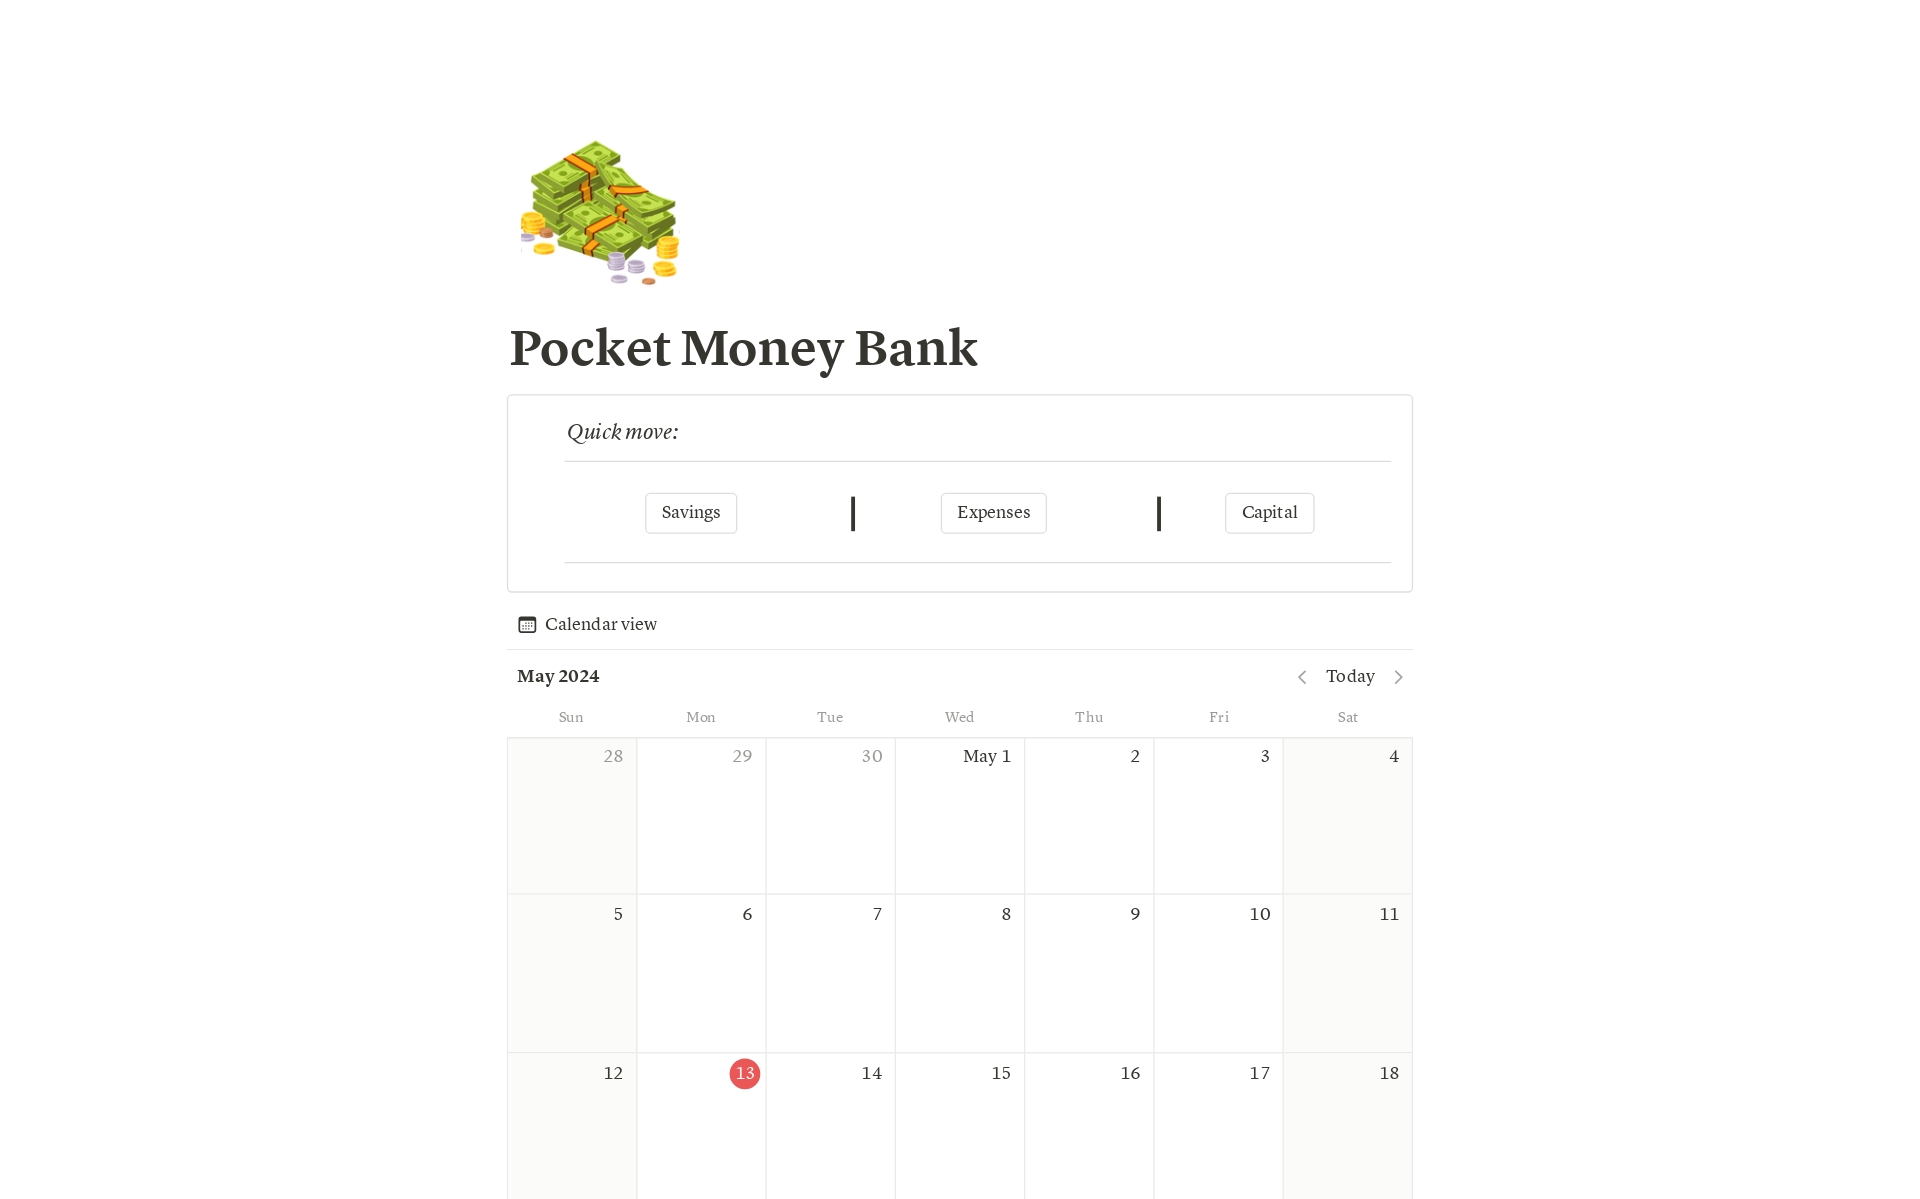 Vista previa de una plantilla para Pocket Money Bank